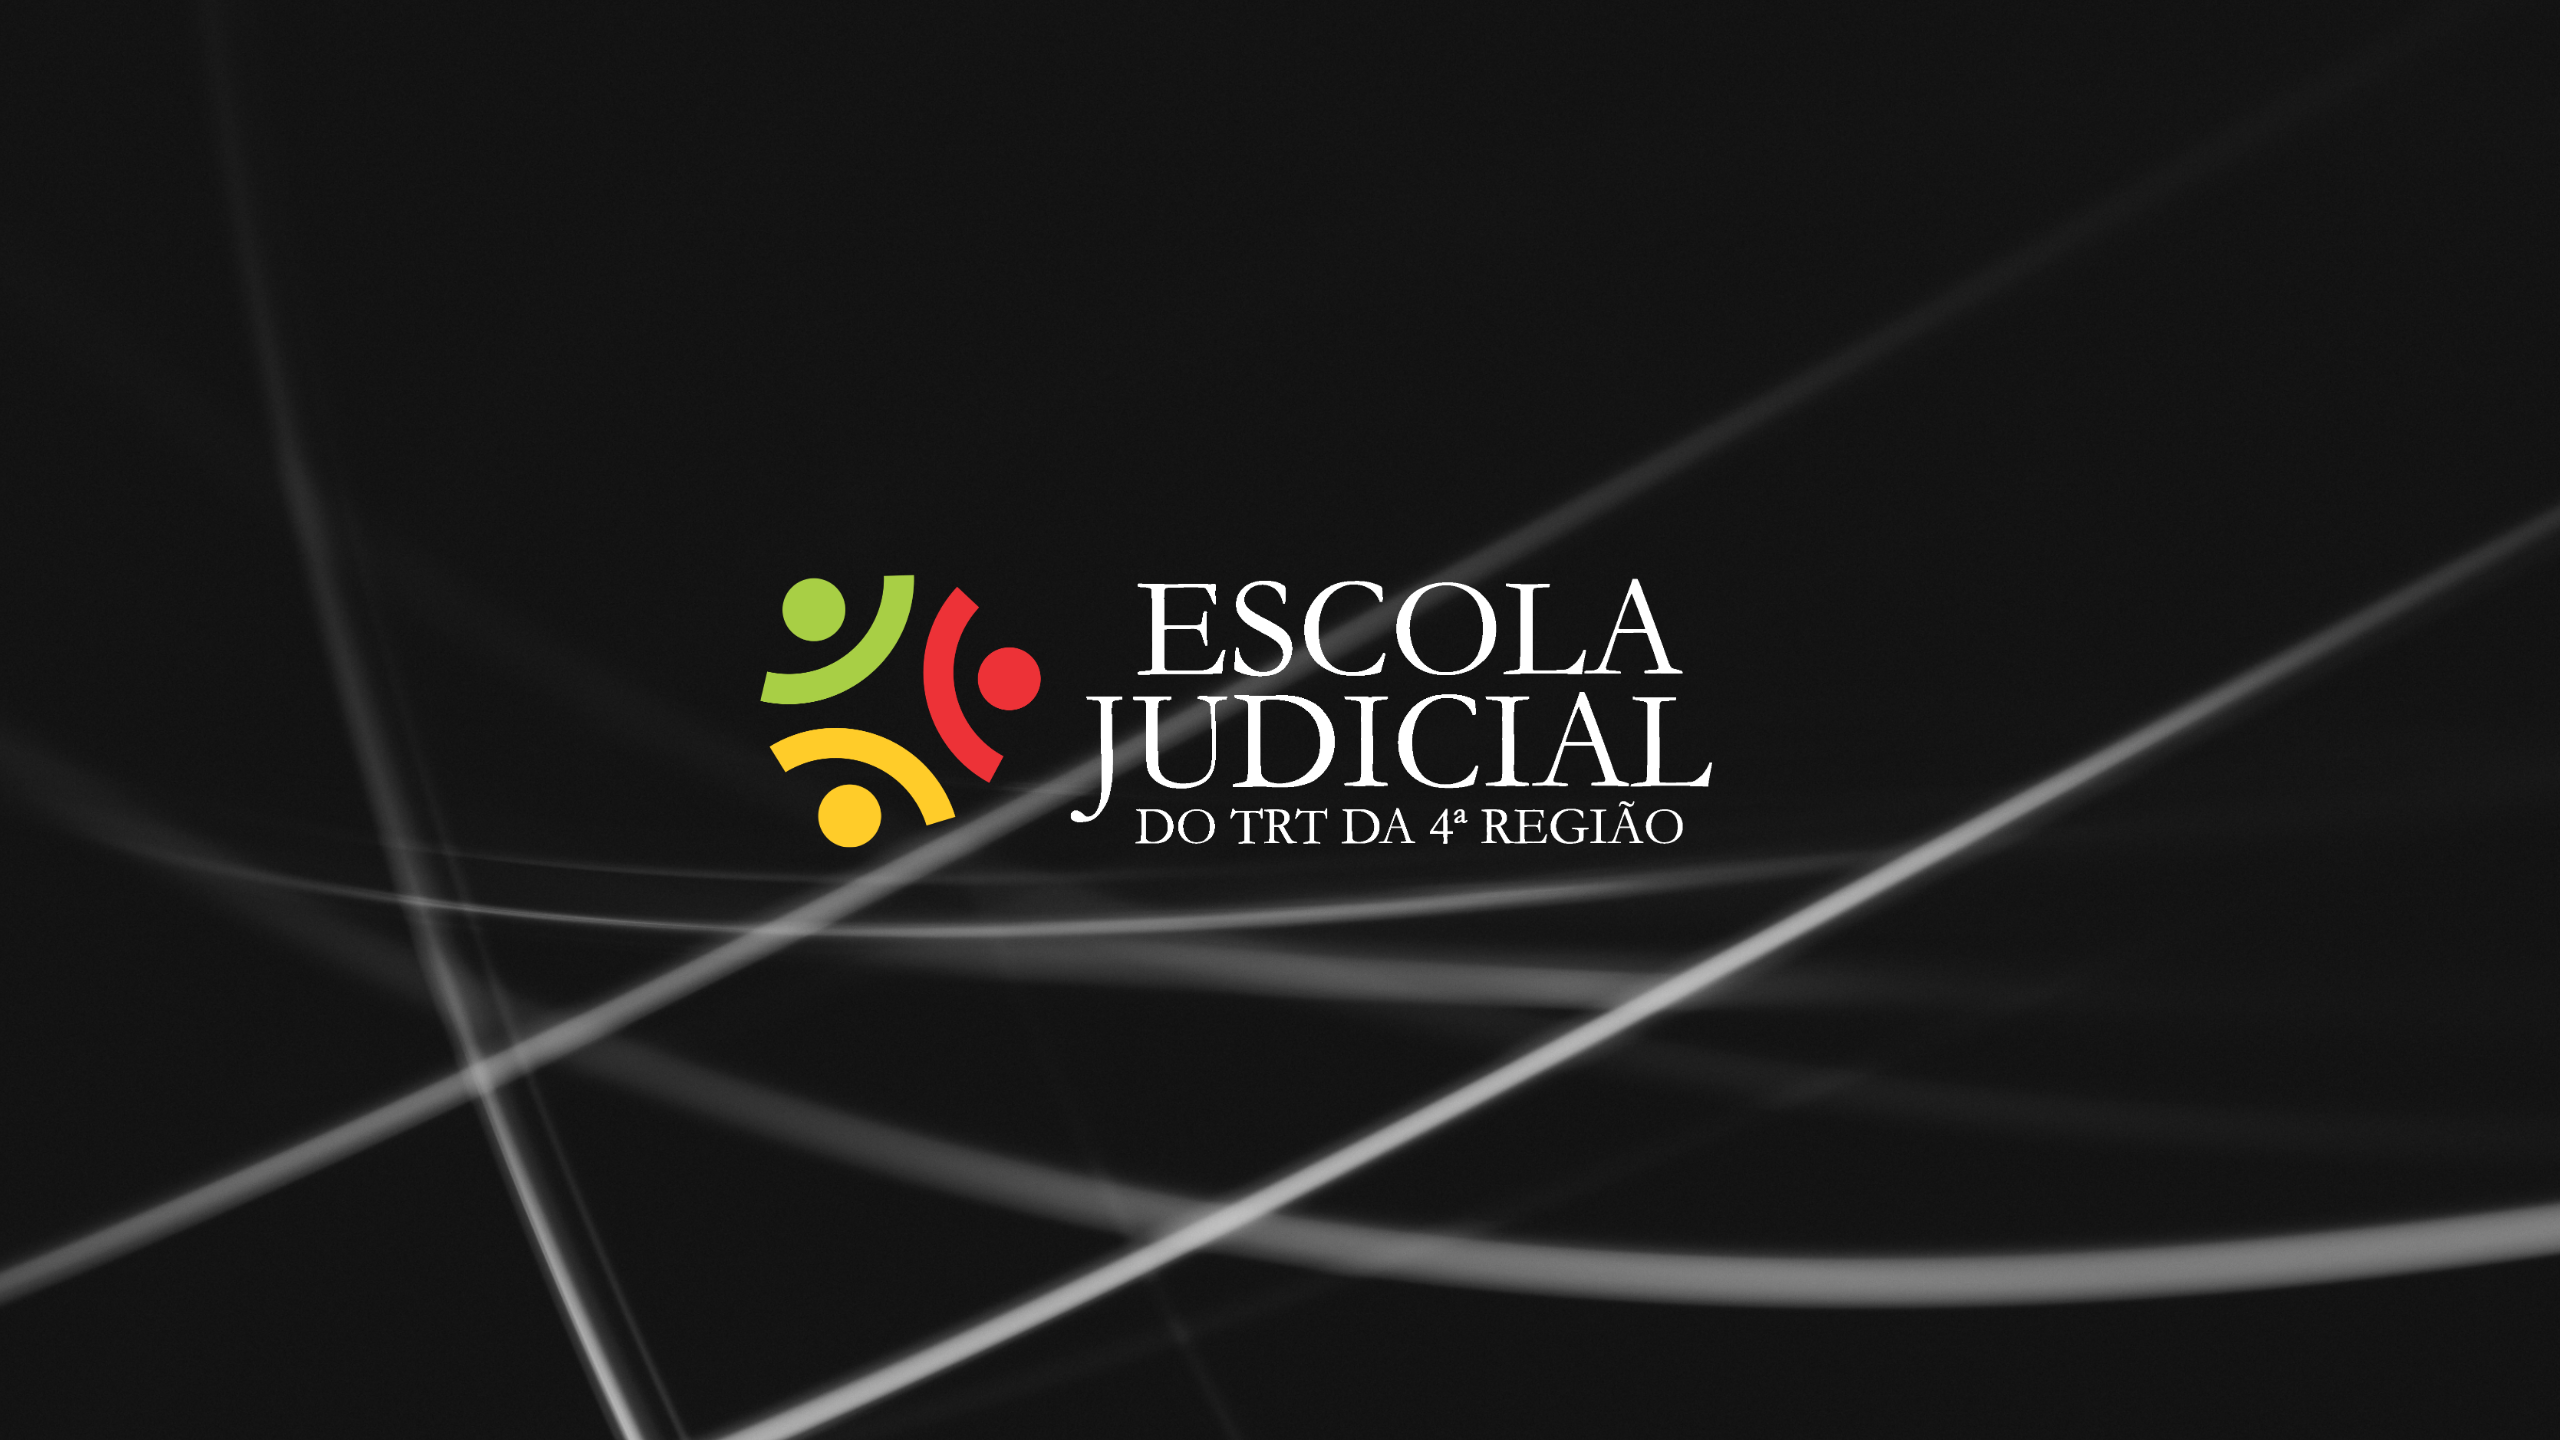 Banner retangular com fundo preto, tendo o logotipo da Escola Judicial do TRT4 ao centro.